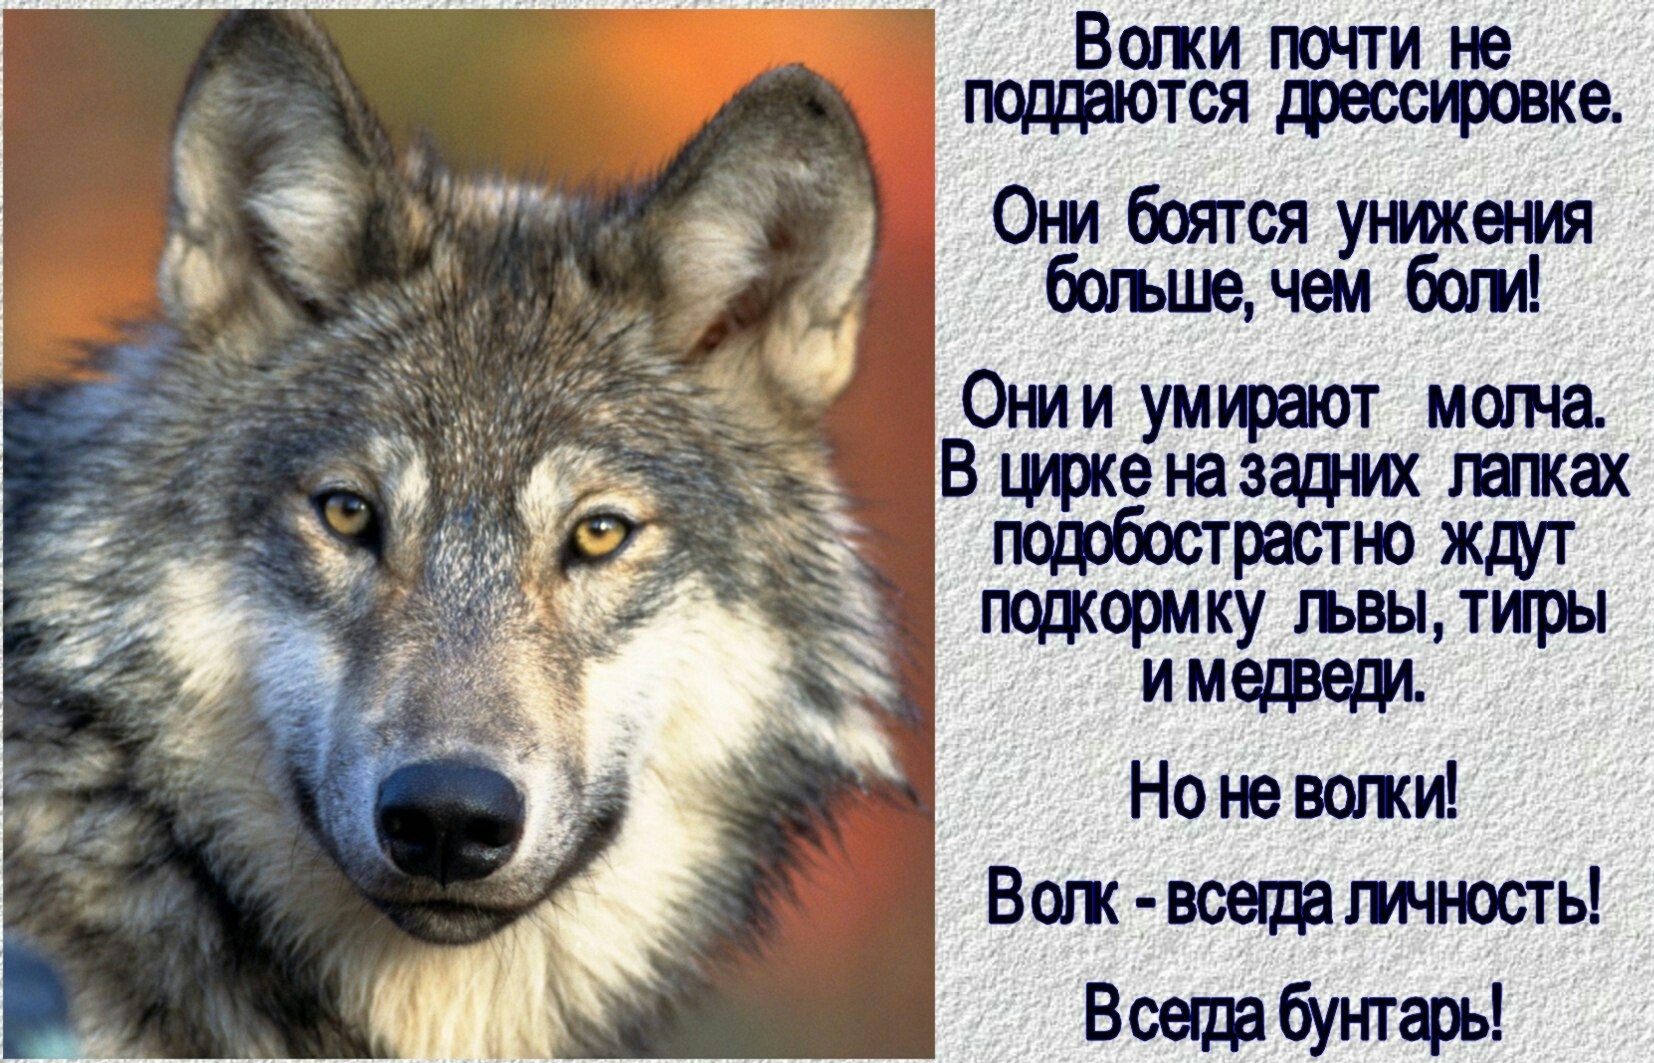 Волки в жизни человека